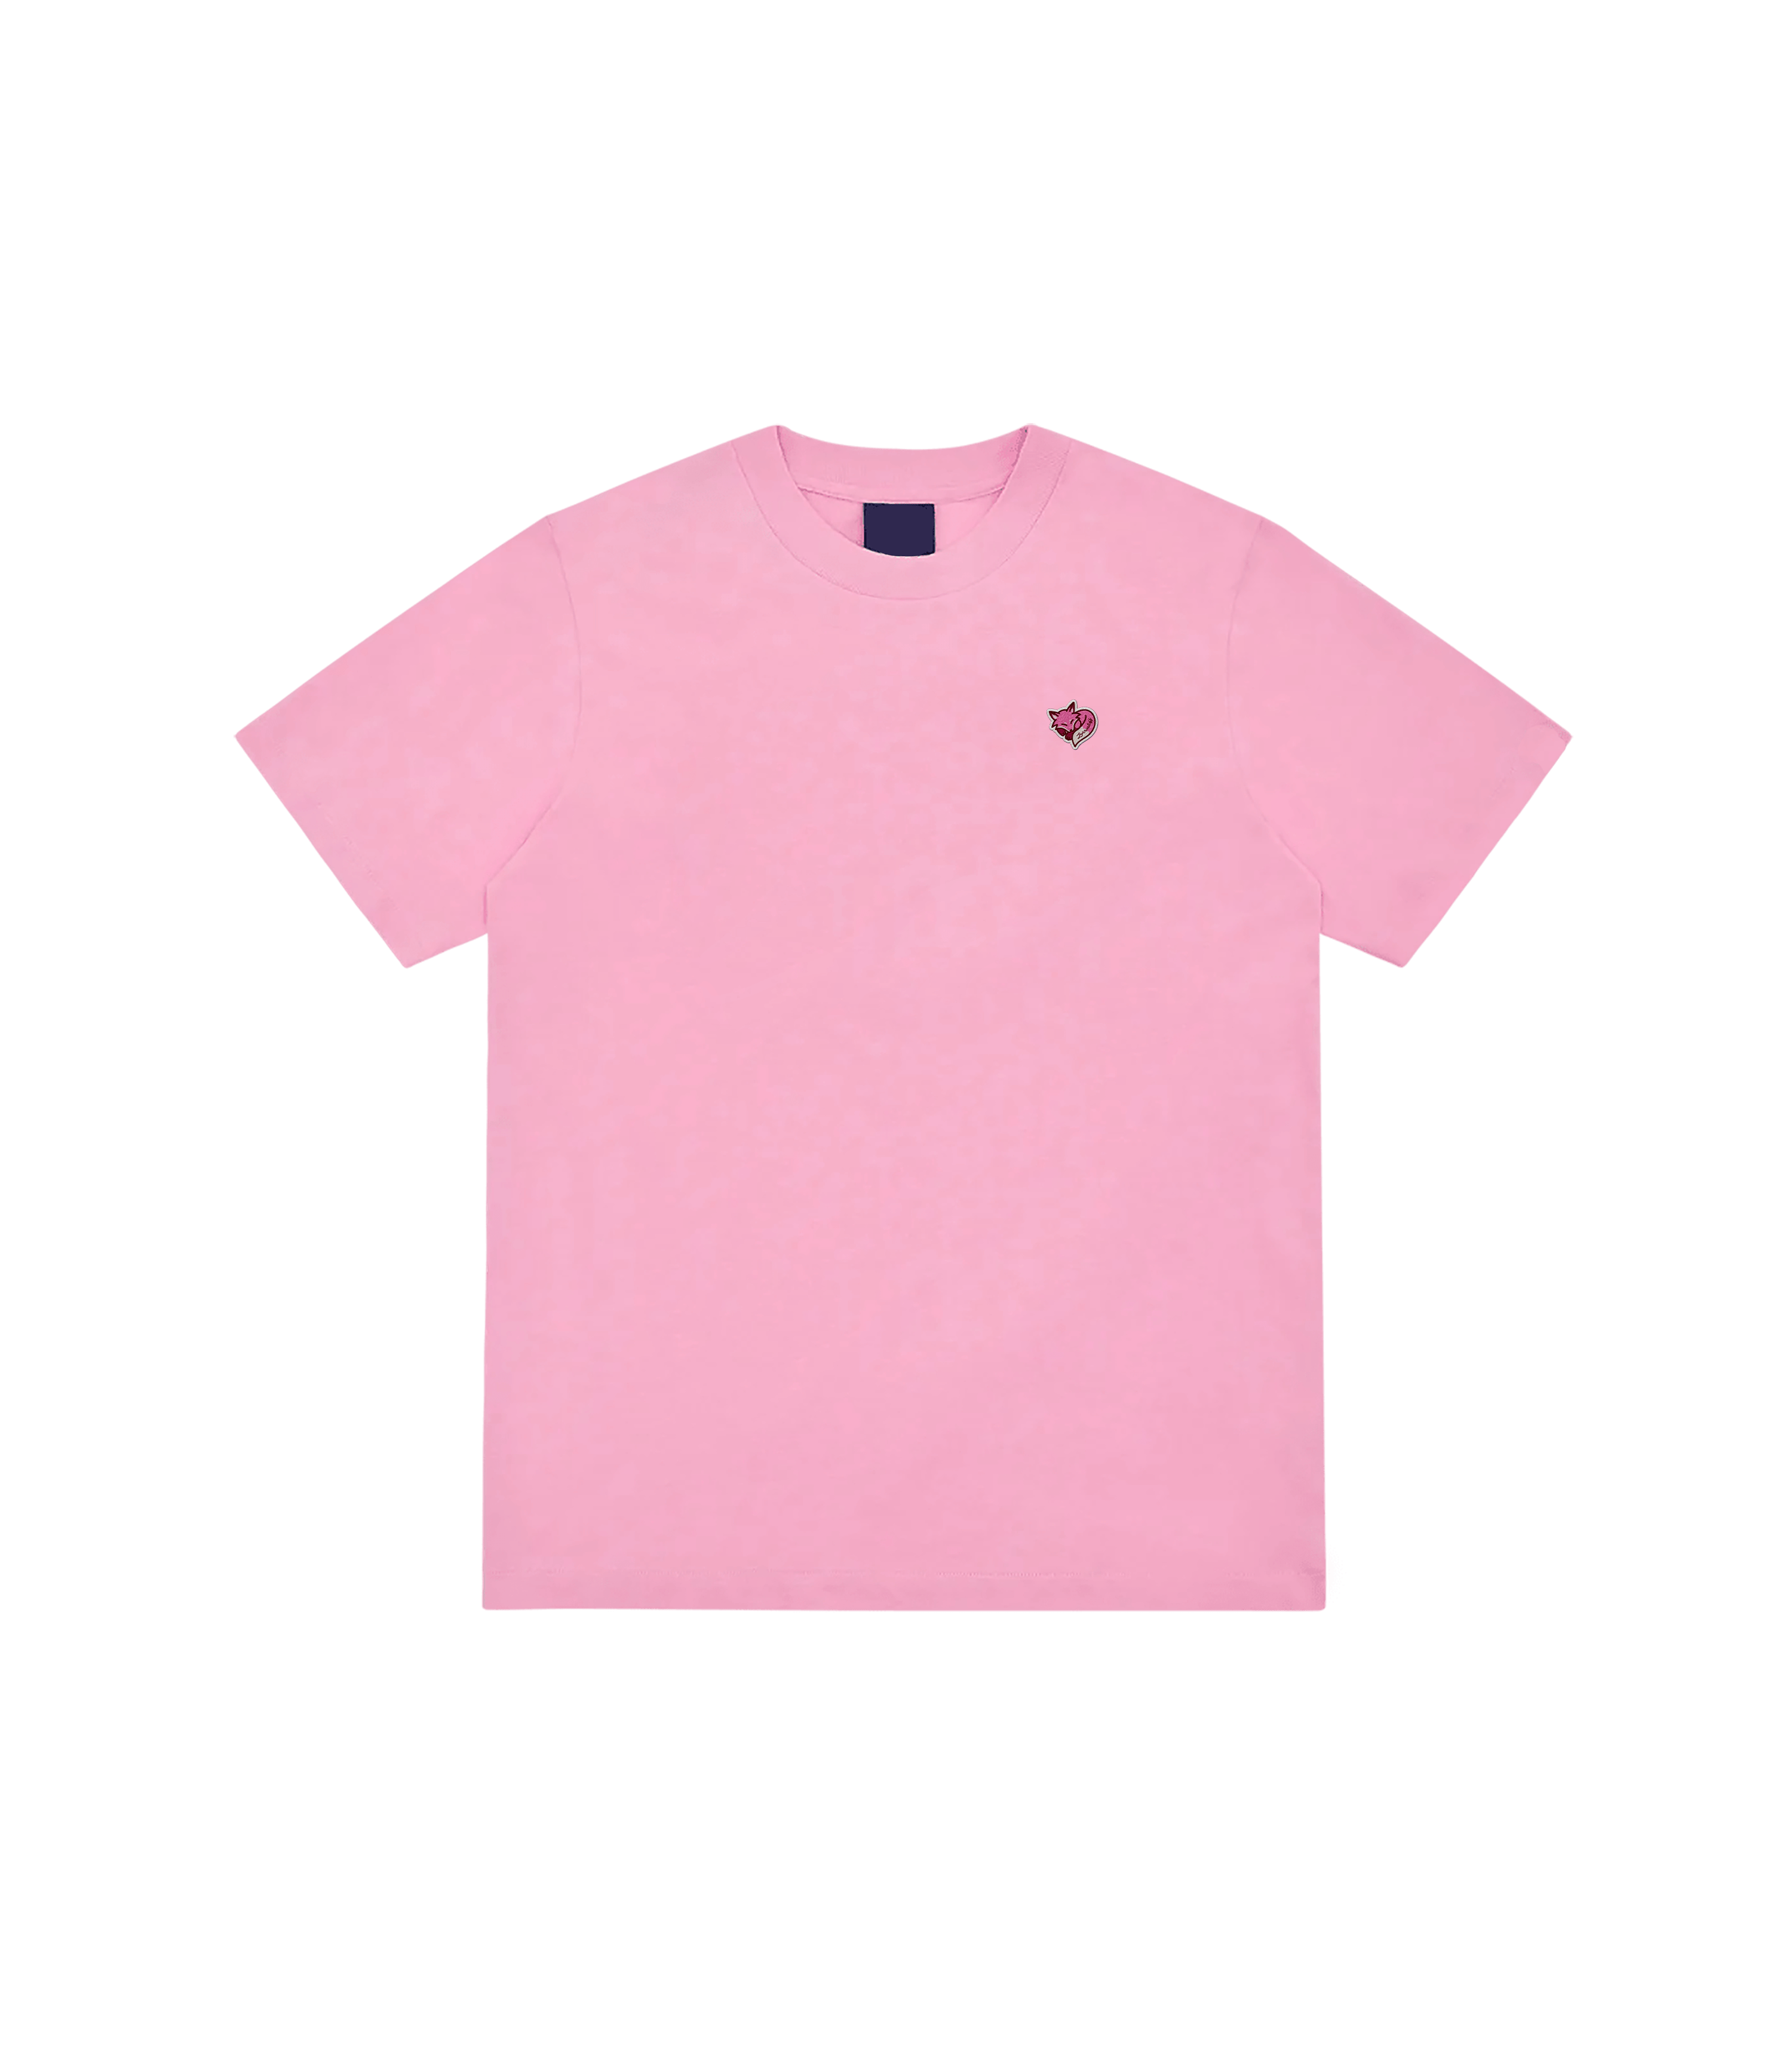 Zorro Stuff T-Shirts S / Pink Cupid Pink Tee